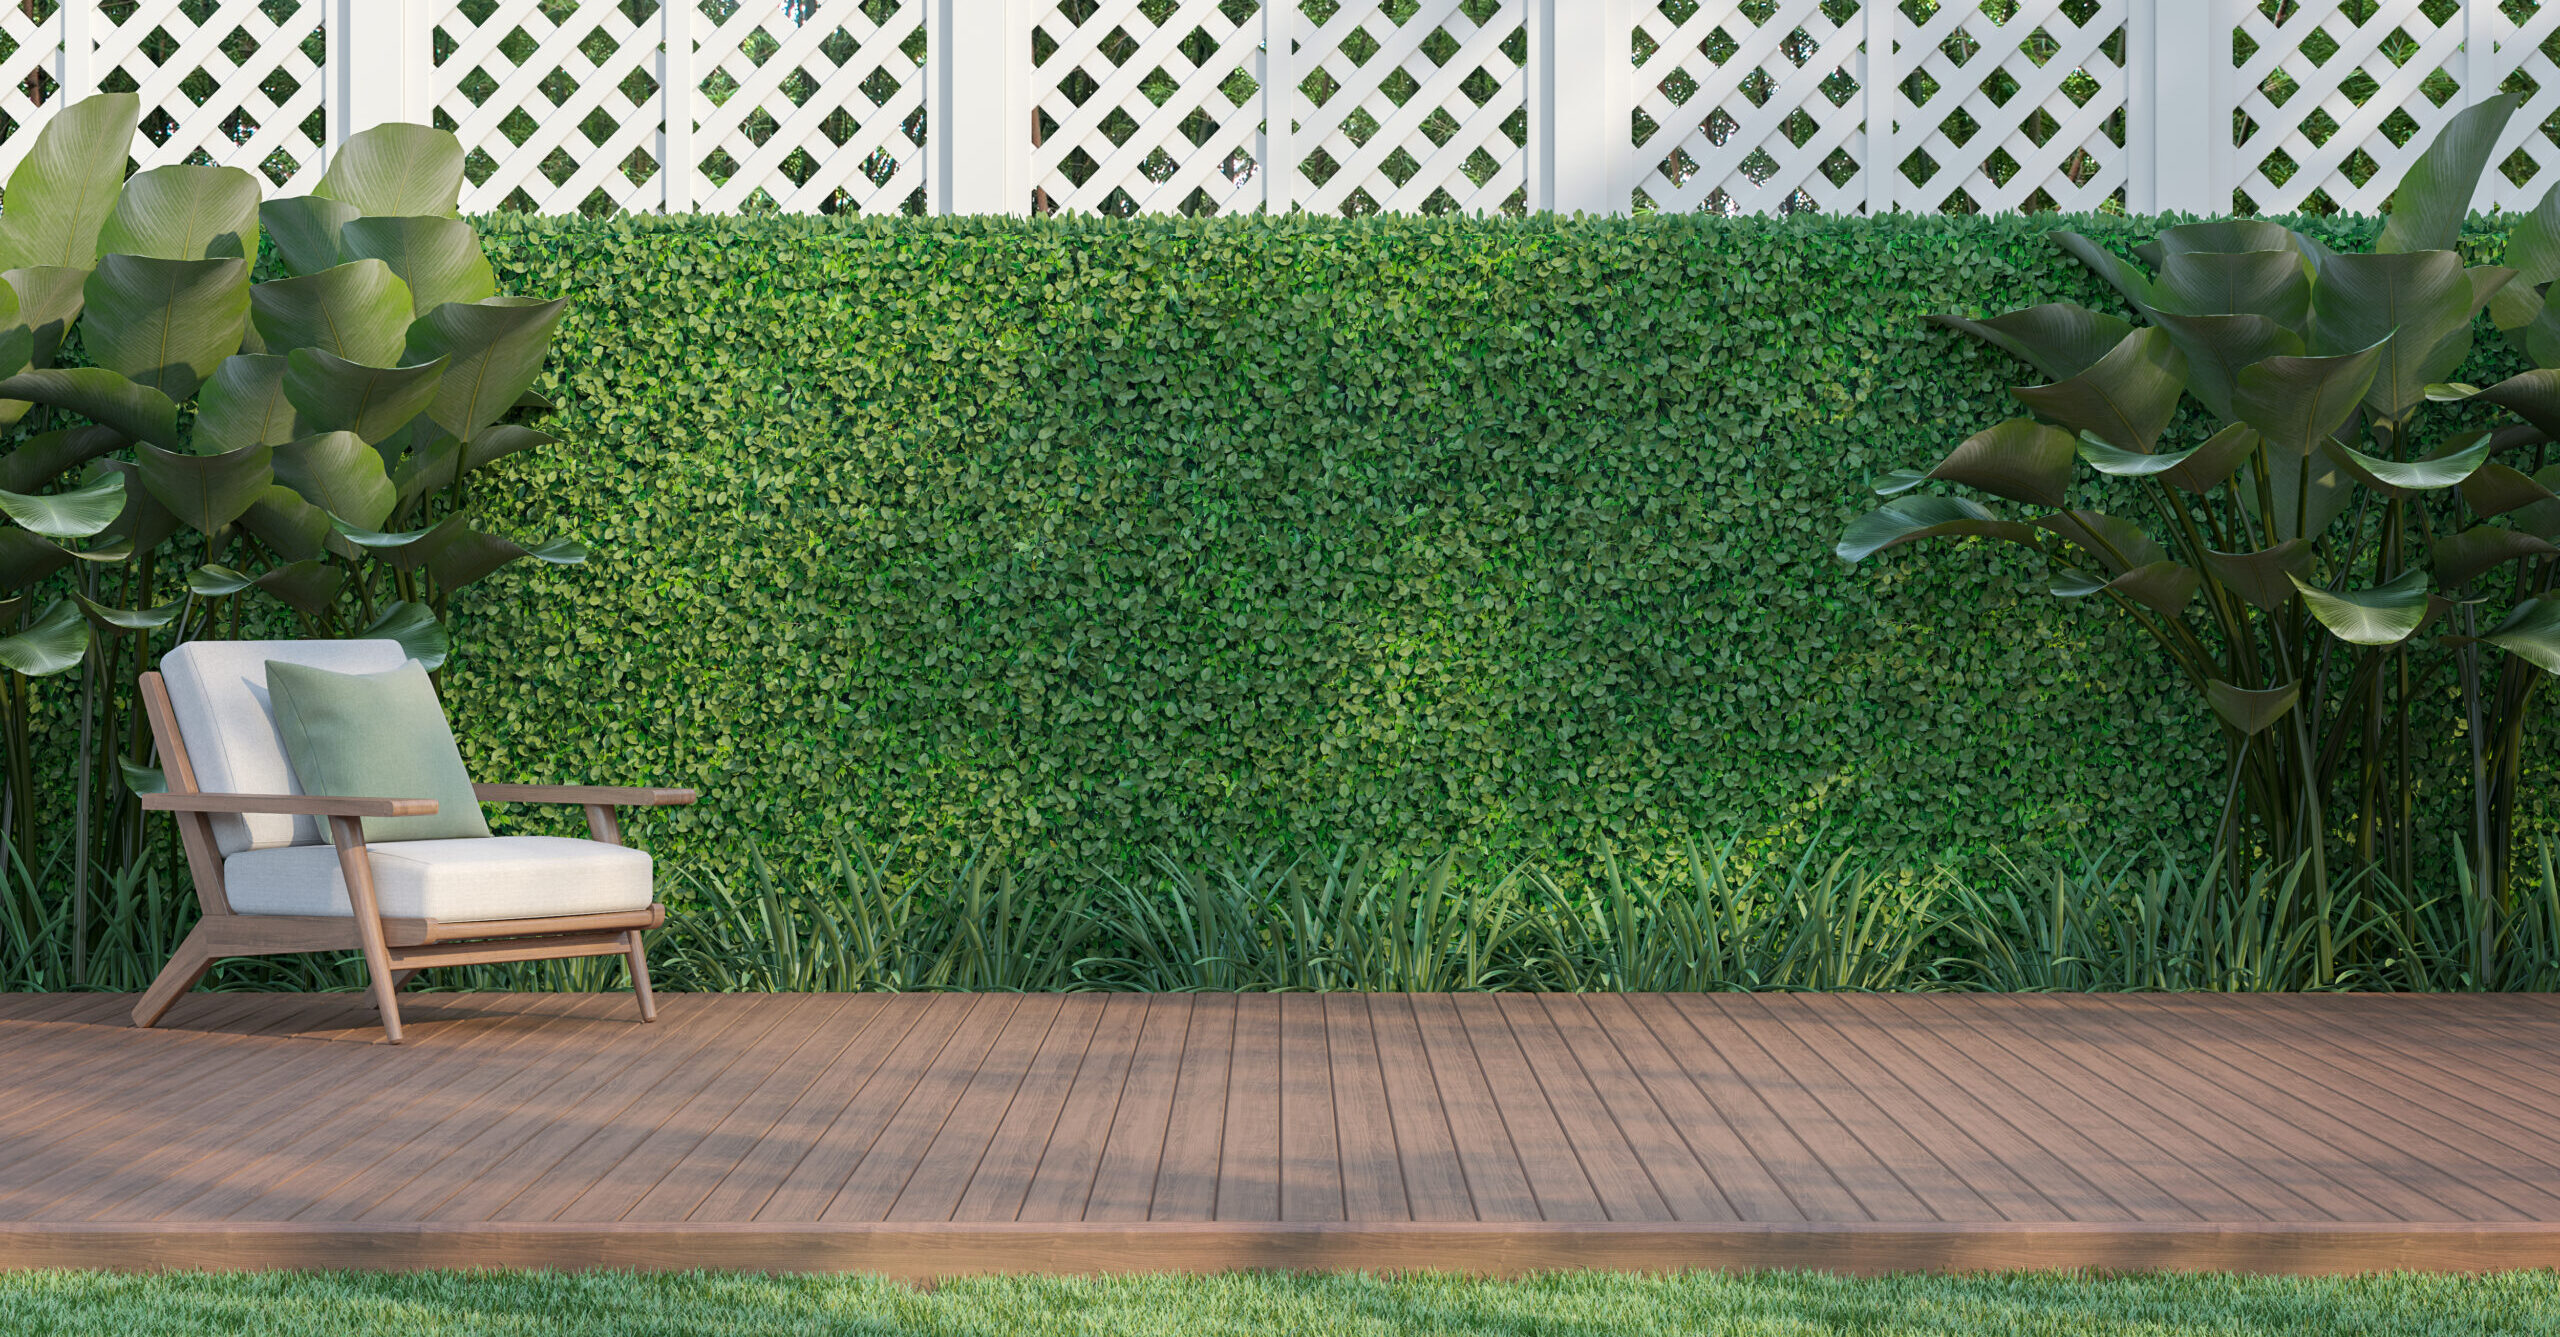 Outdoor wood terrace in the garden 3d render